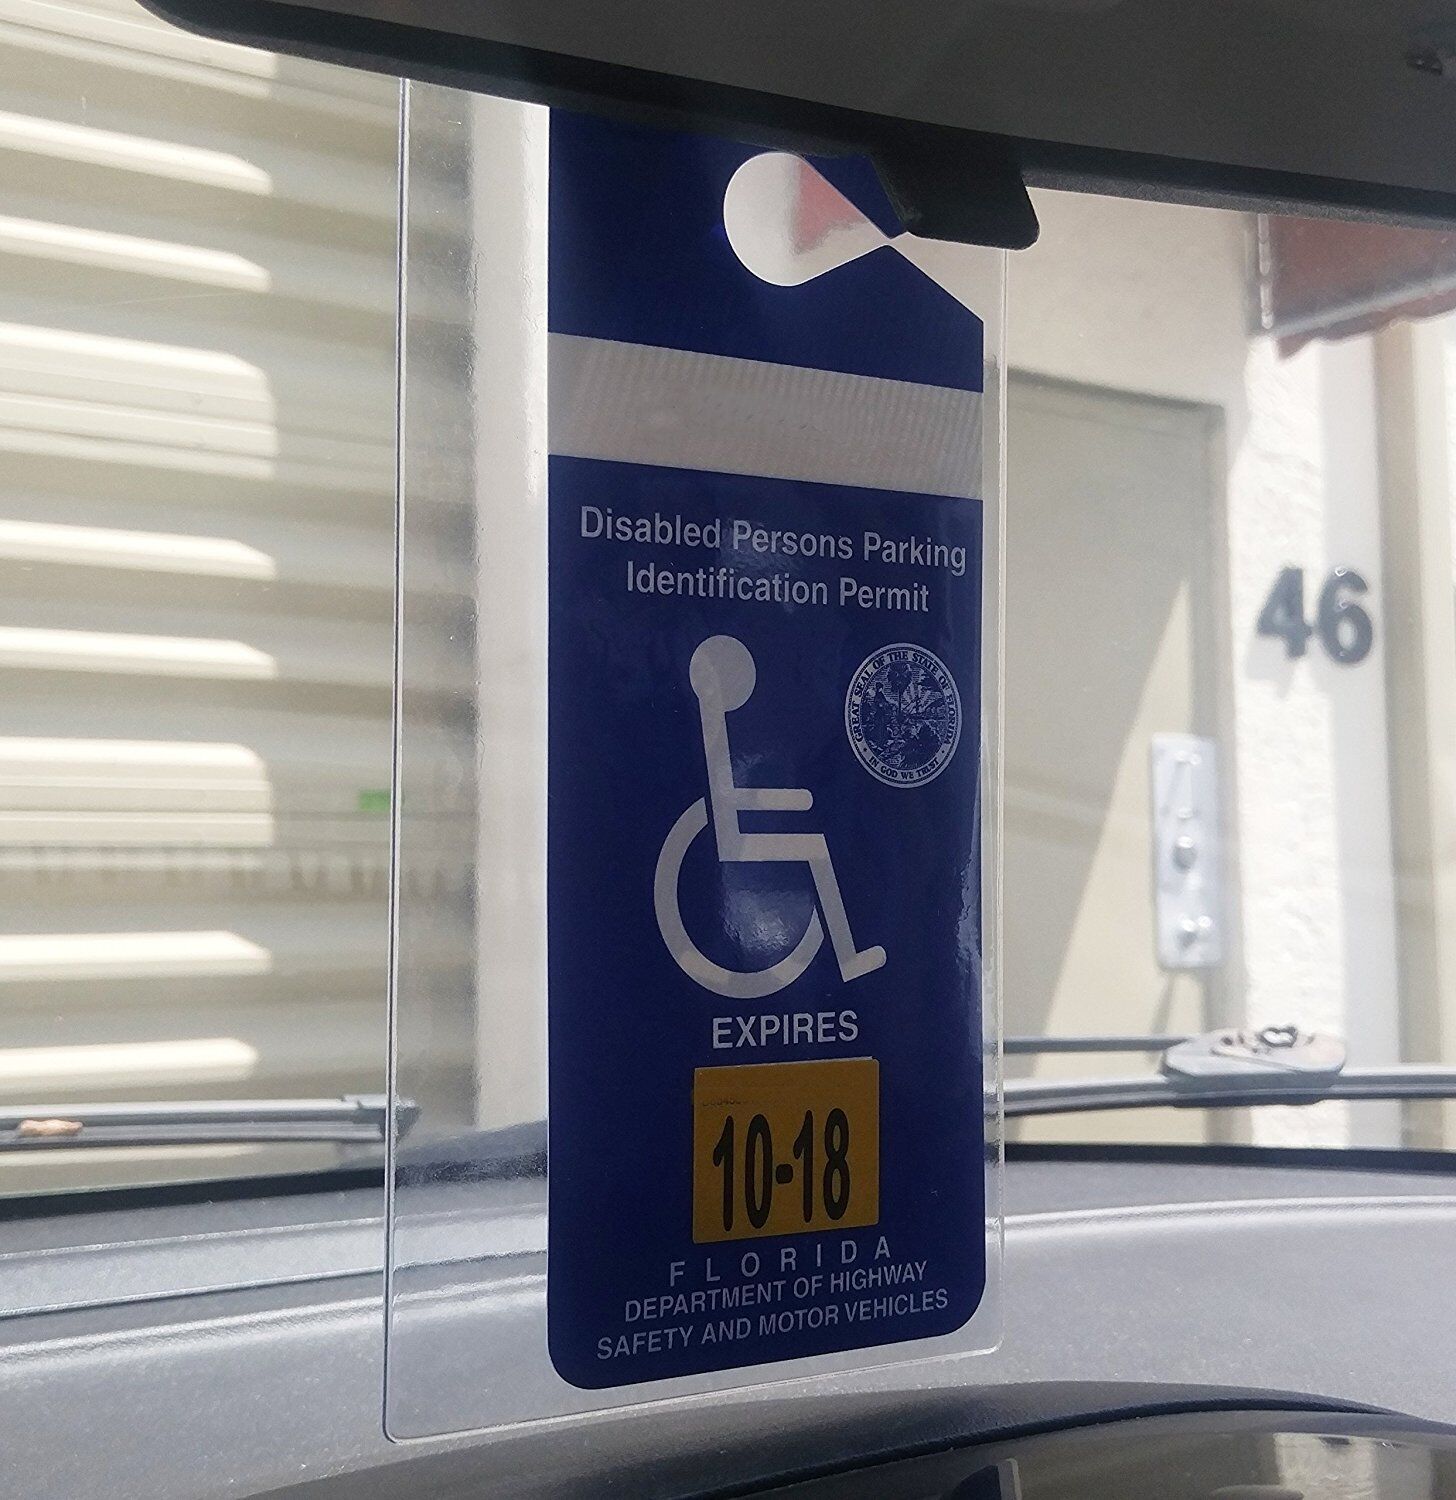 4pc Handicap Parking Placard Holders - Rear View Mirror Disability Permit Hanger Specialist ID SPID-1120 - фотография #5